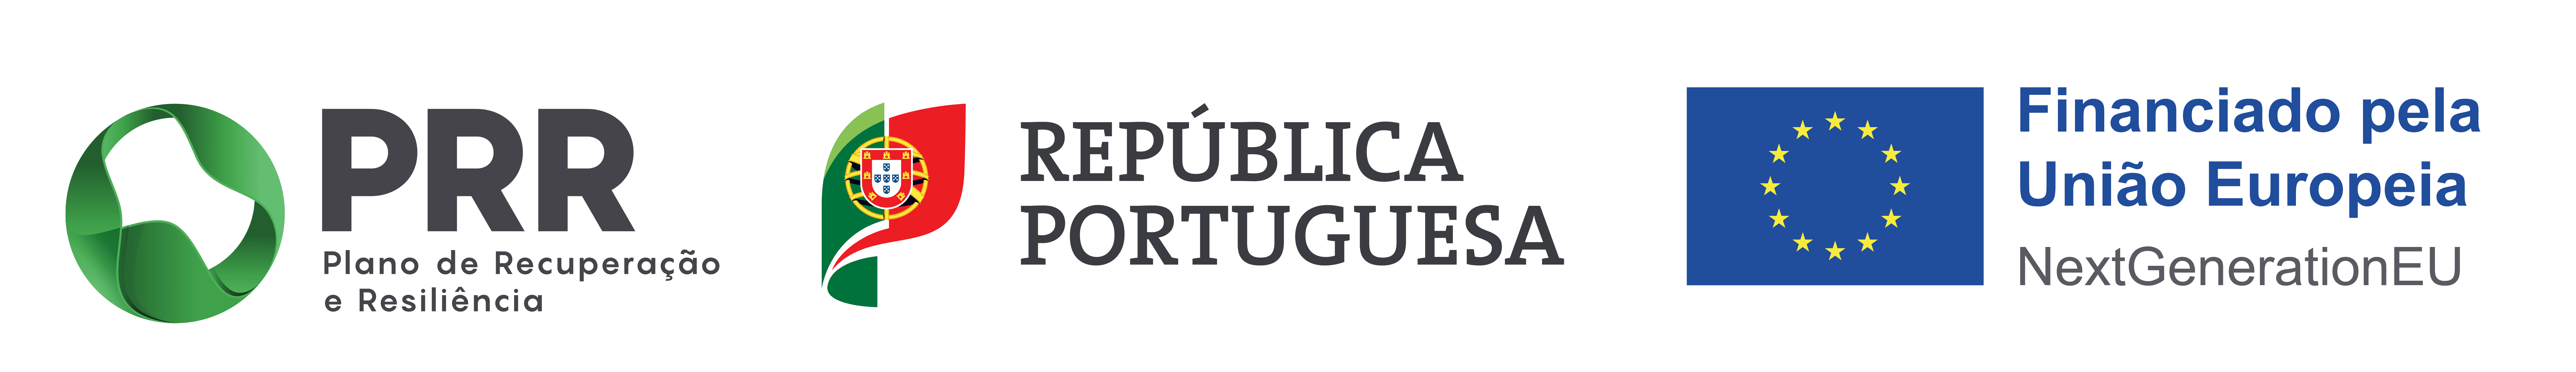 Plano de Recuperação e Resiliência (PRR), República Portuguesa e União Europeia